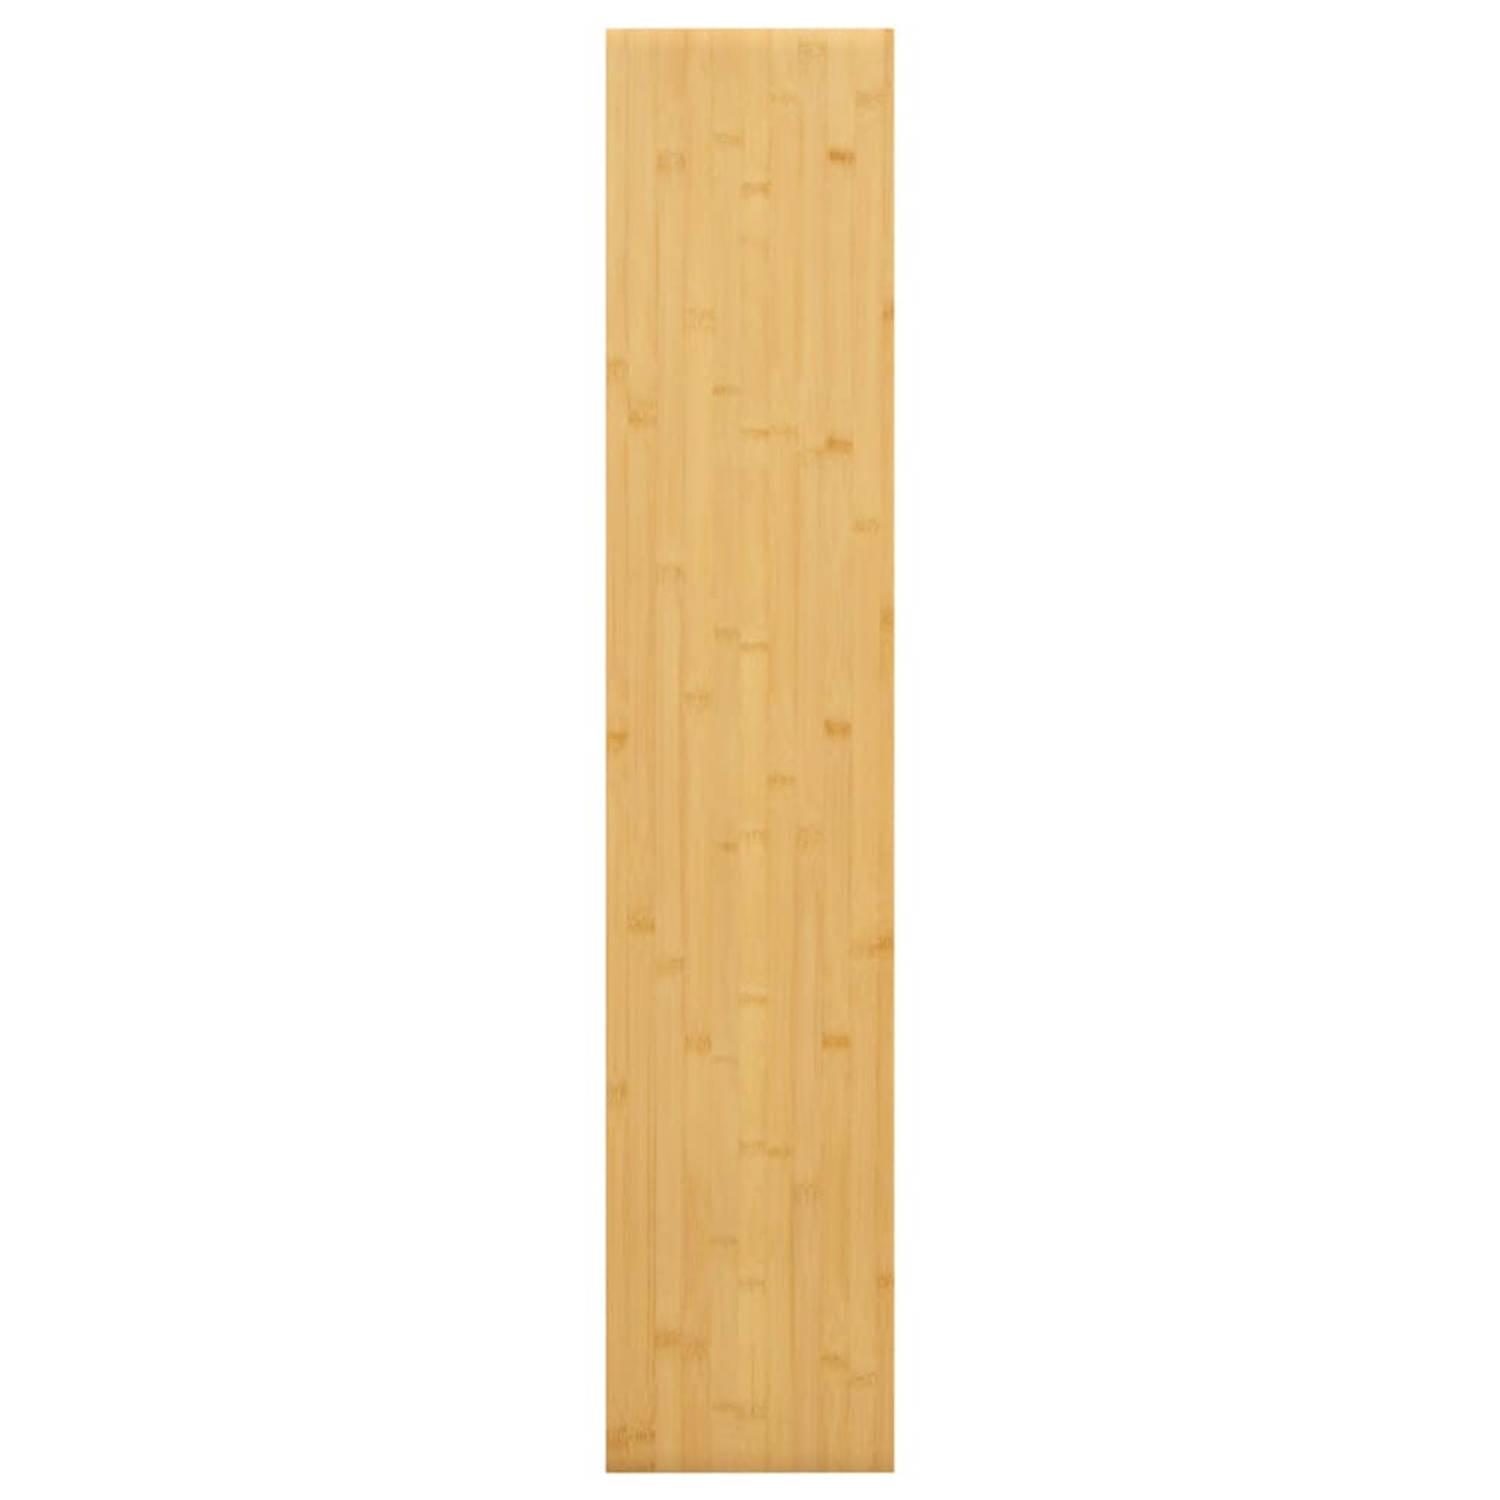 The Living Store wandplank bamboe 100x20x2.5 cm - praktisch en decoratief